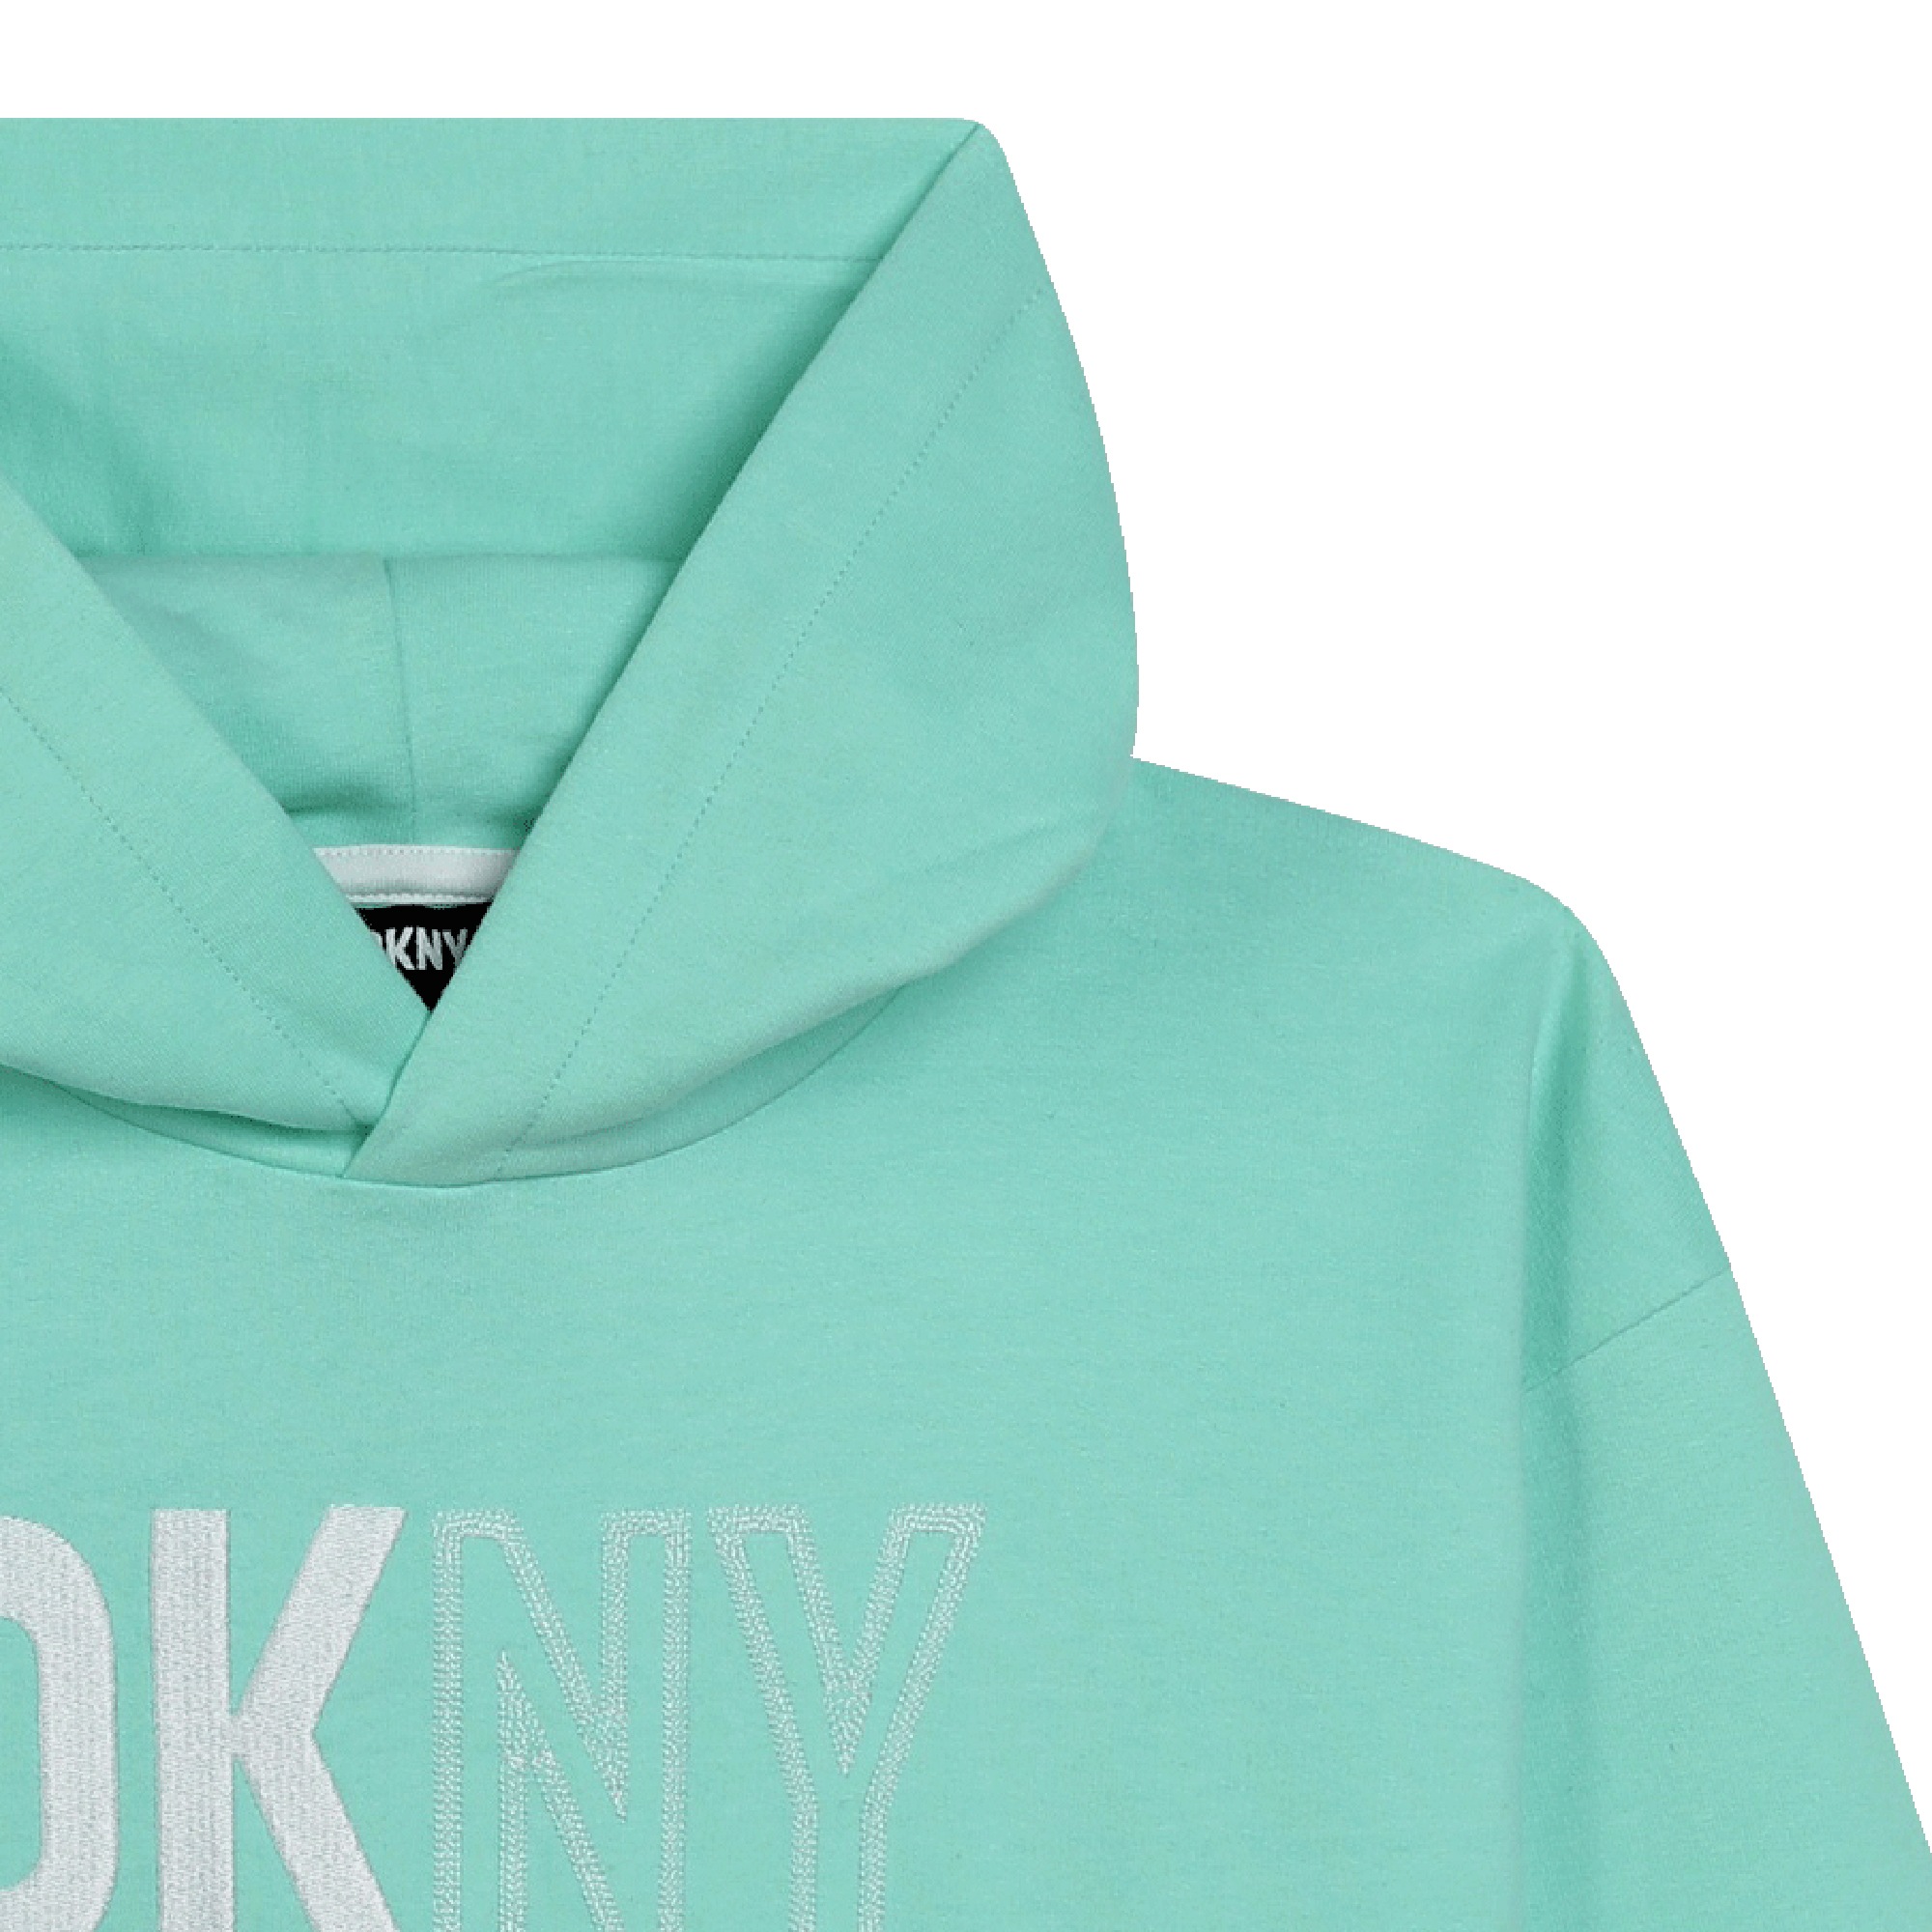 Uniseks fleece sweater DKNY Voor